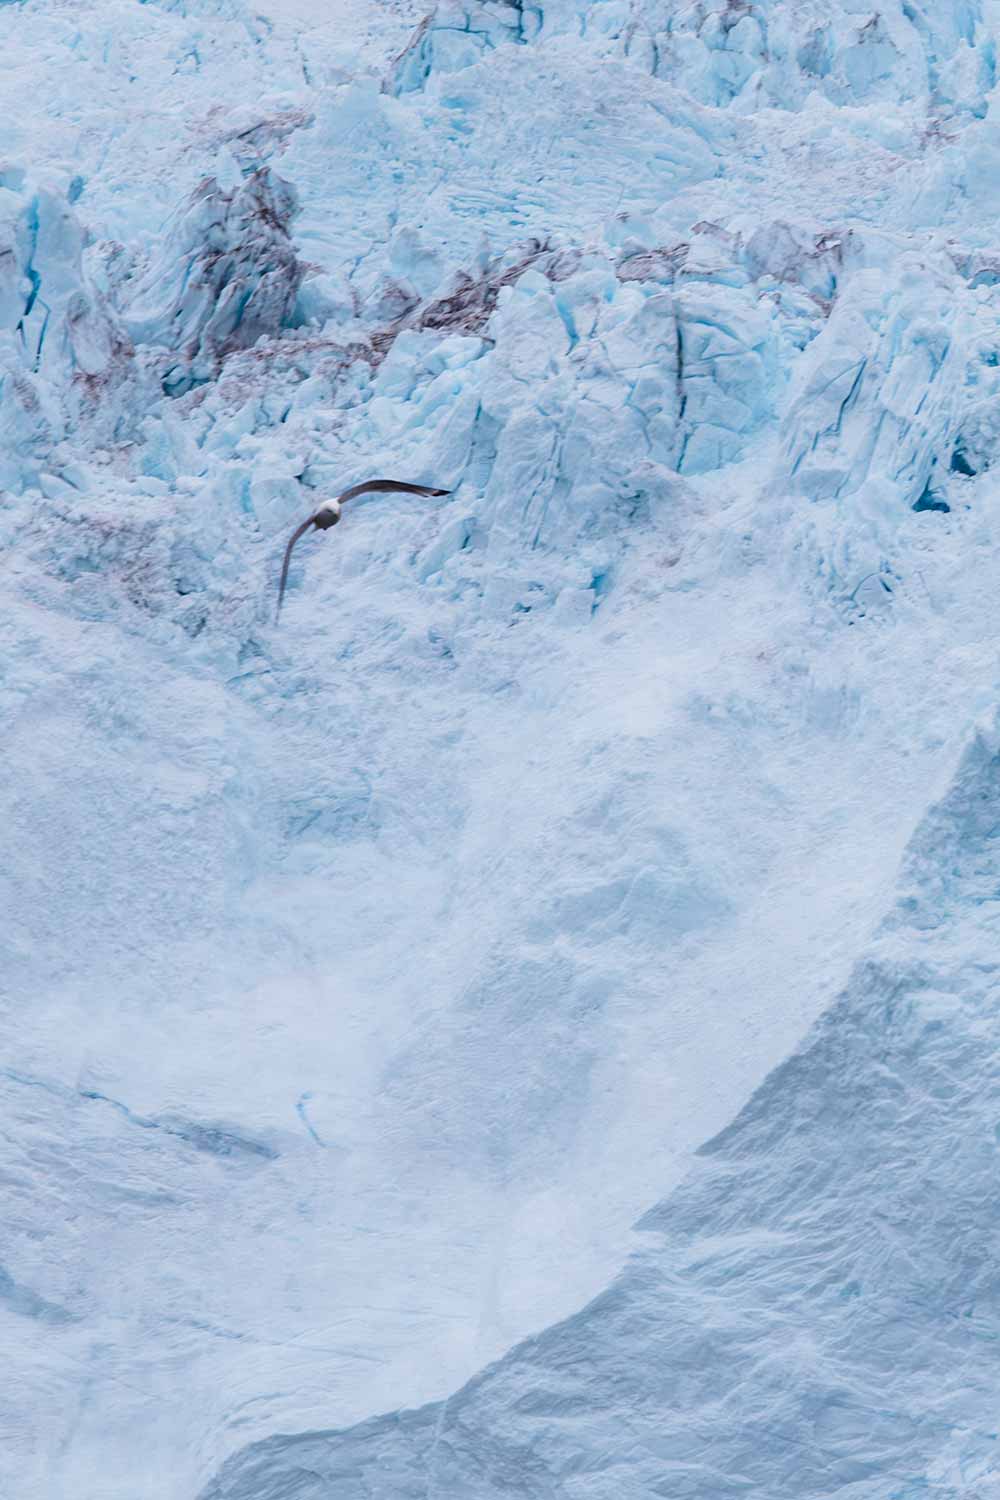 Eqi Glacier Tour: Explore the majestic Eqip Sermia in Greenland's wilderness